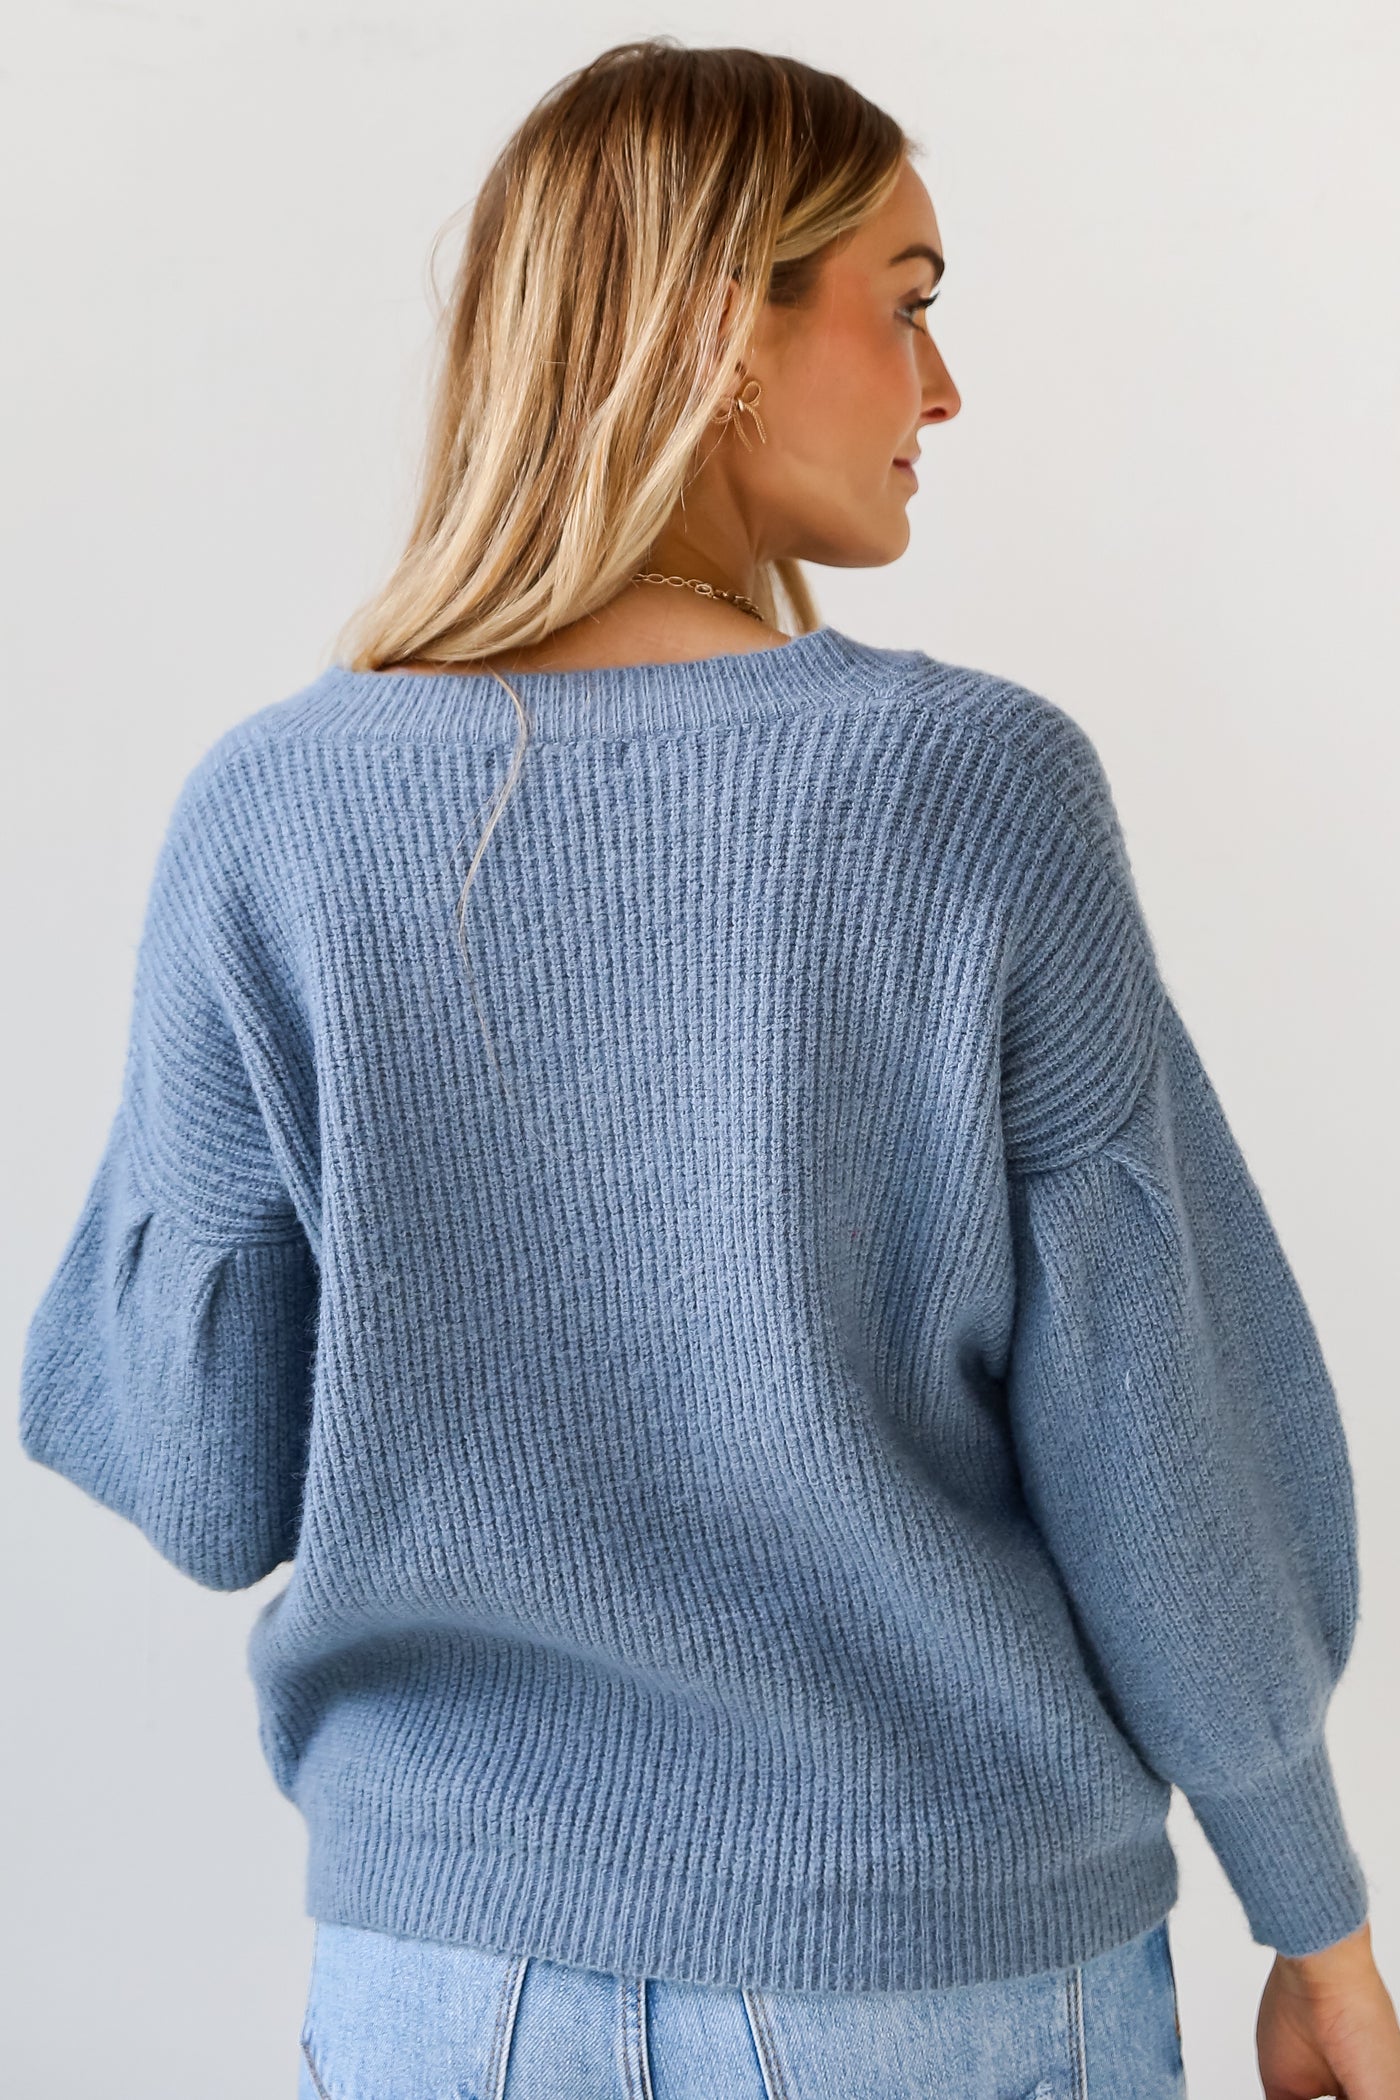 cute blue sweater